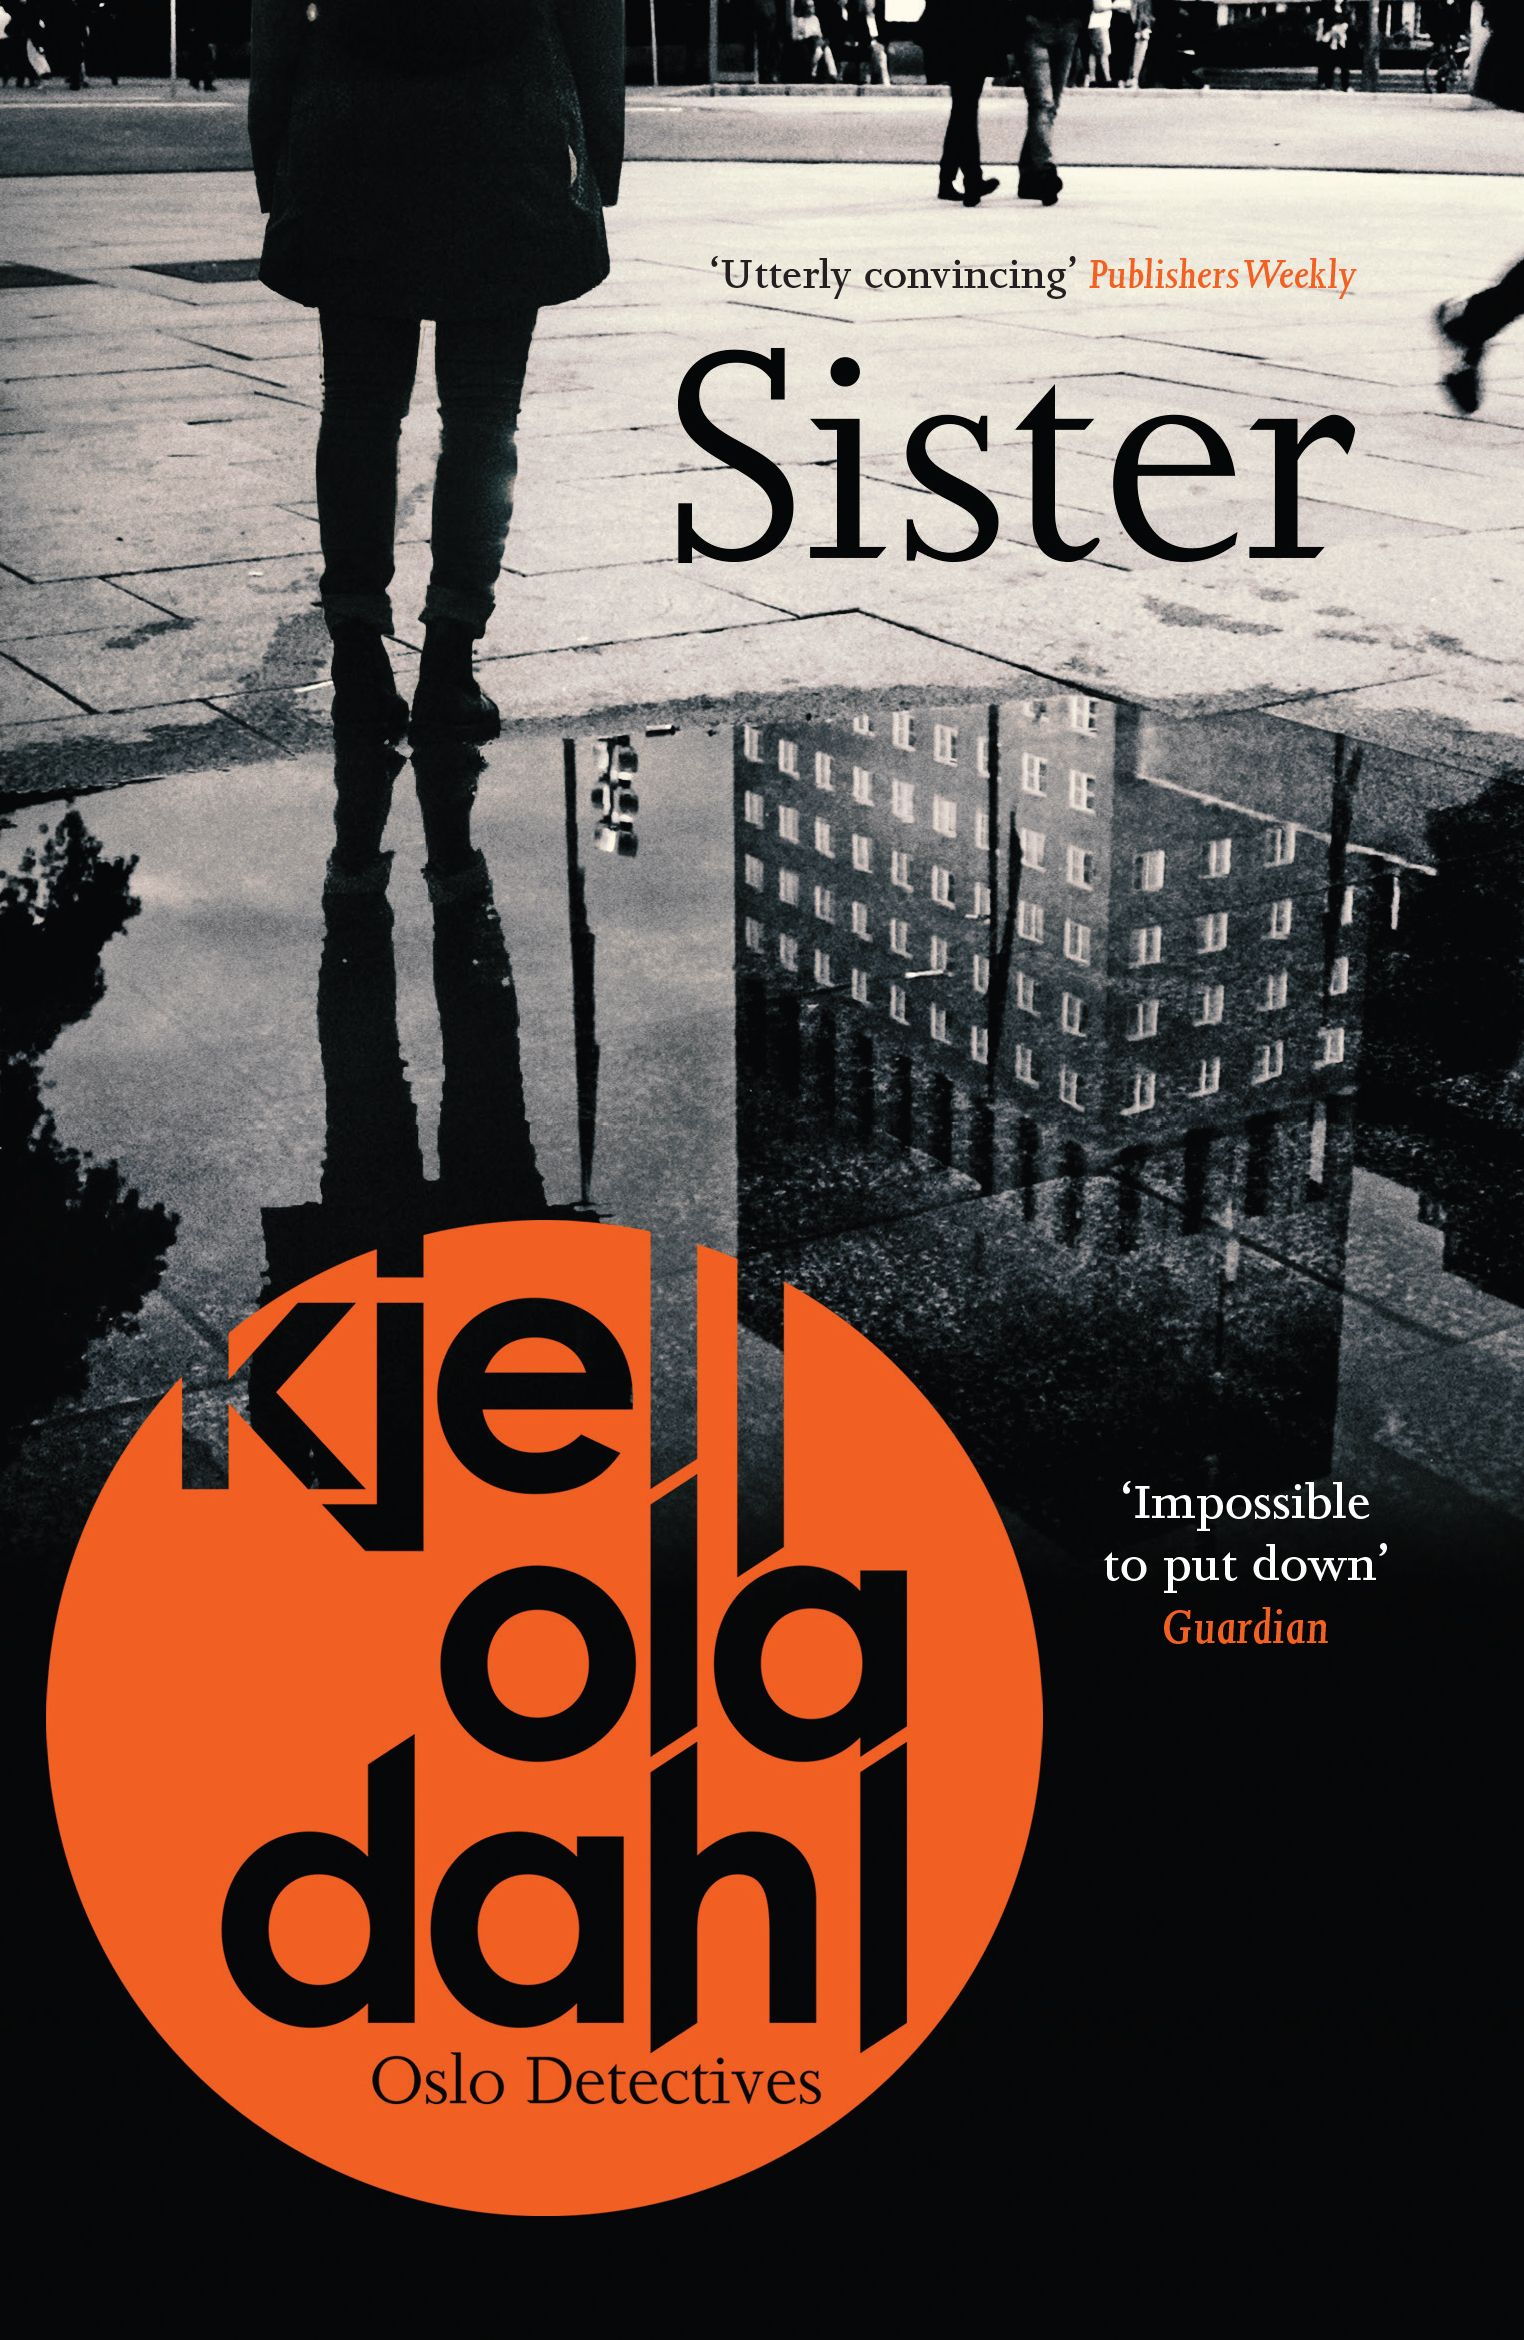 Sister by Kjell Ola Dahl